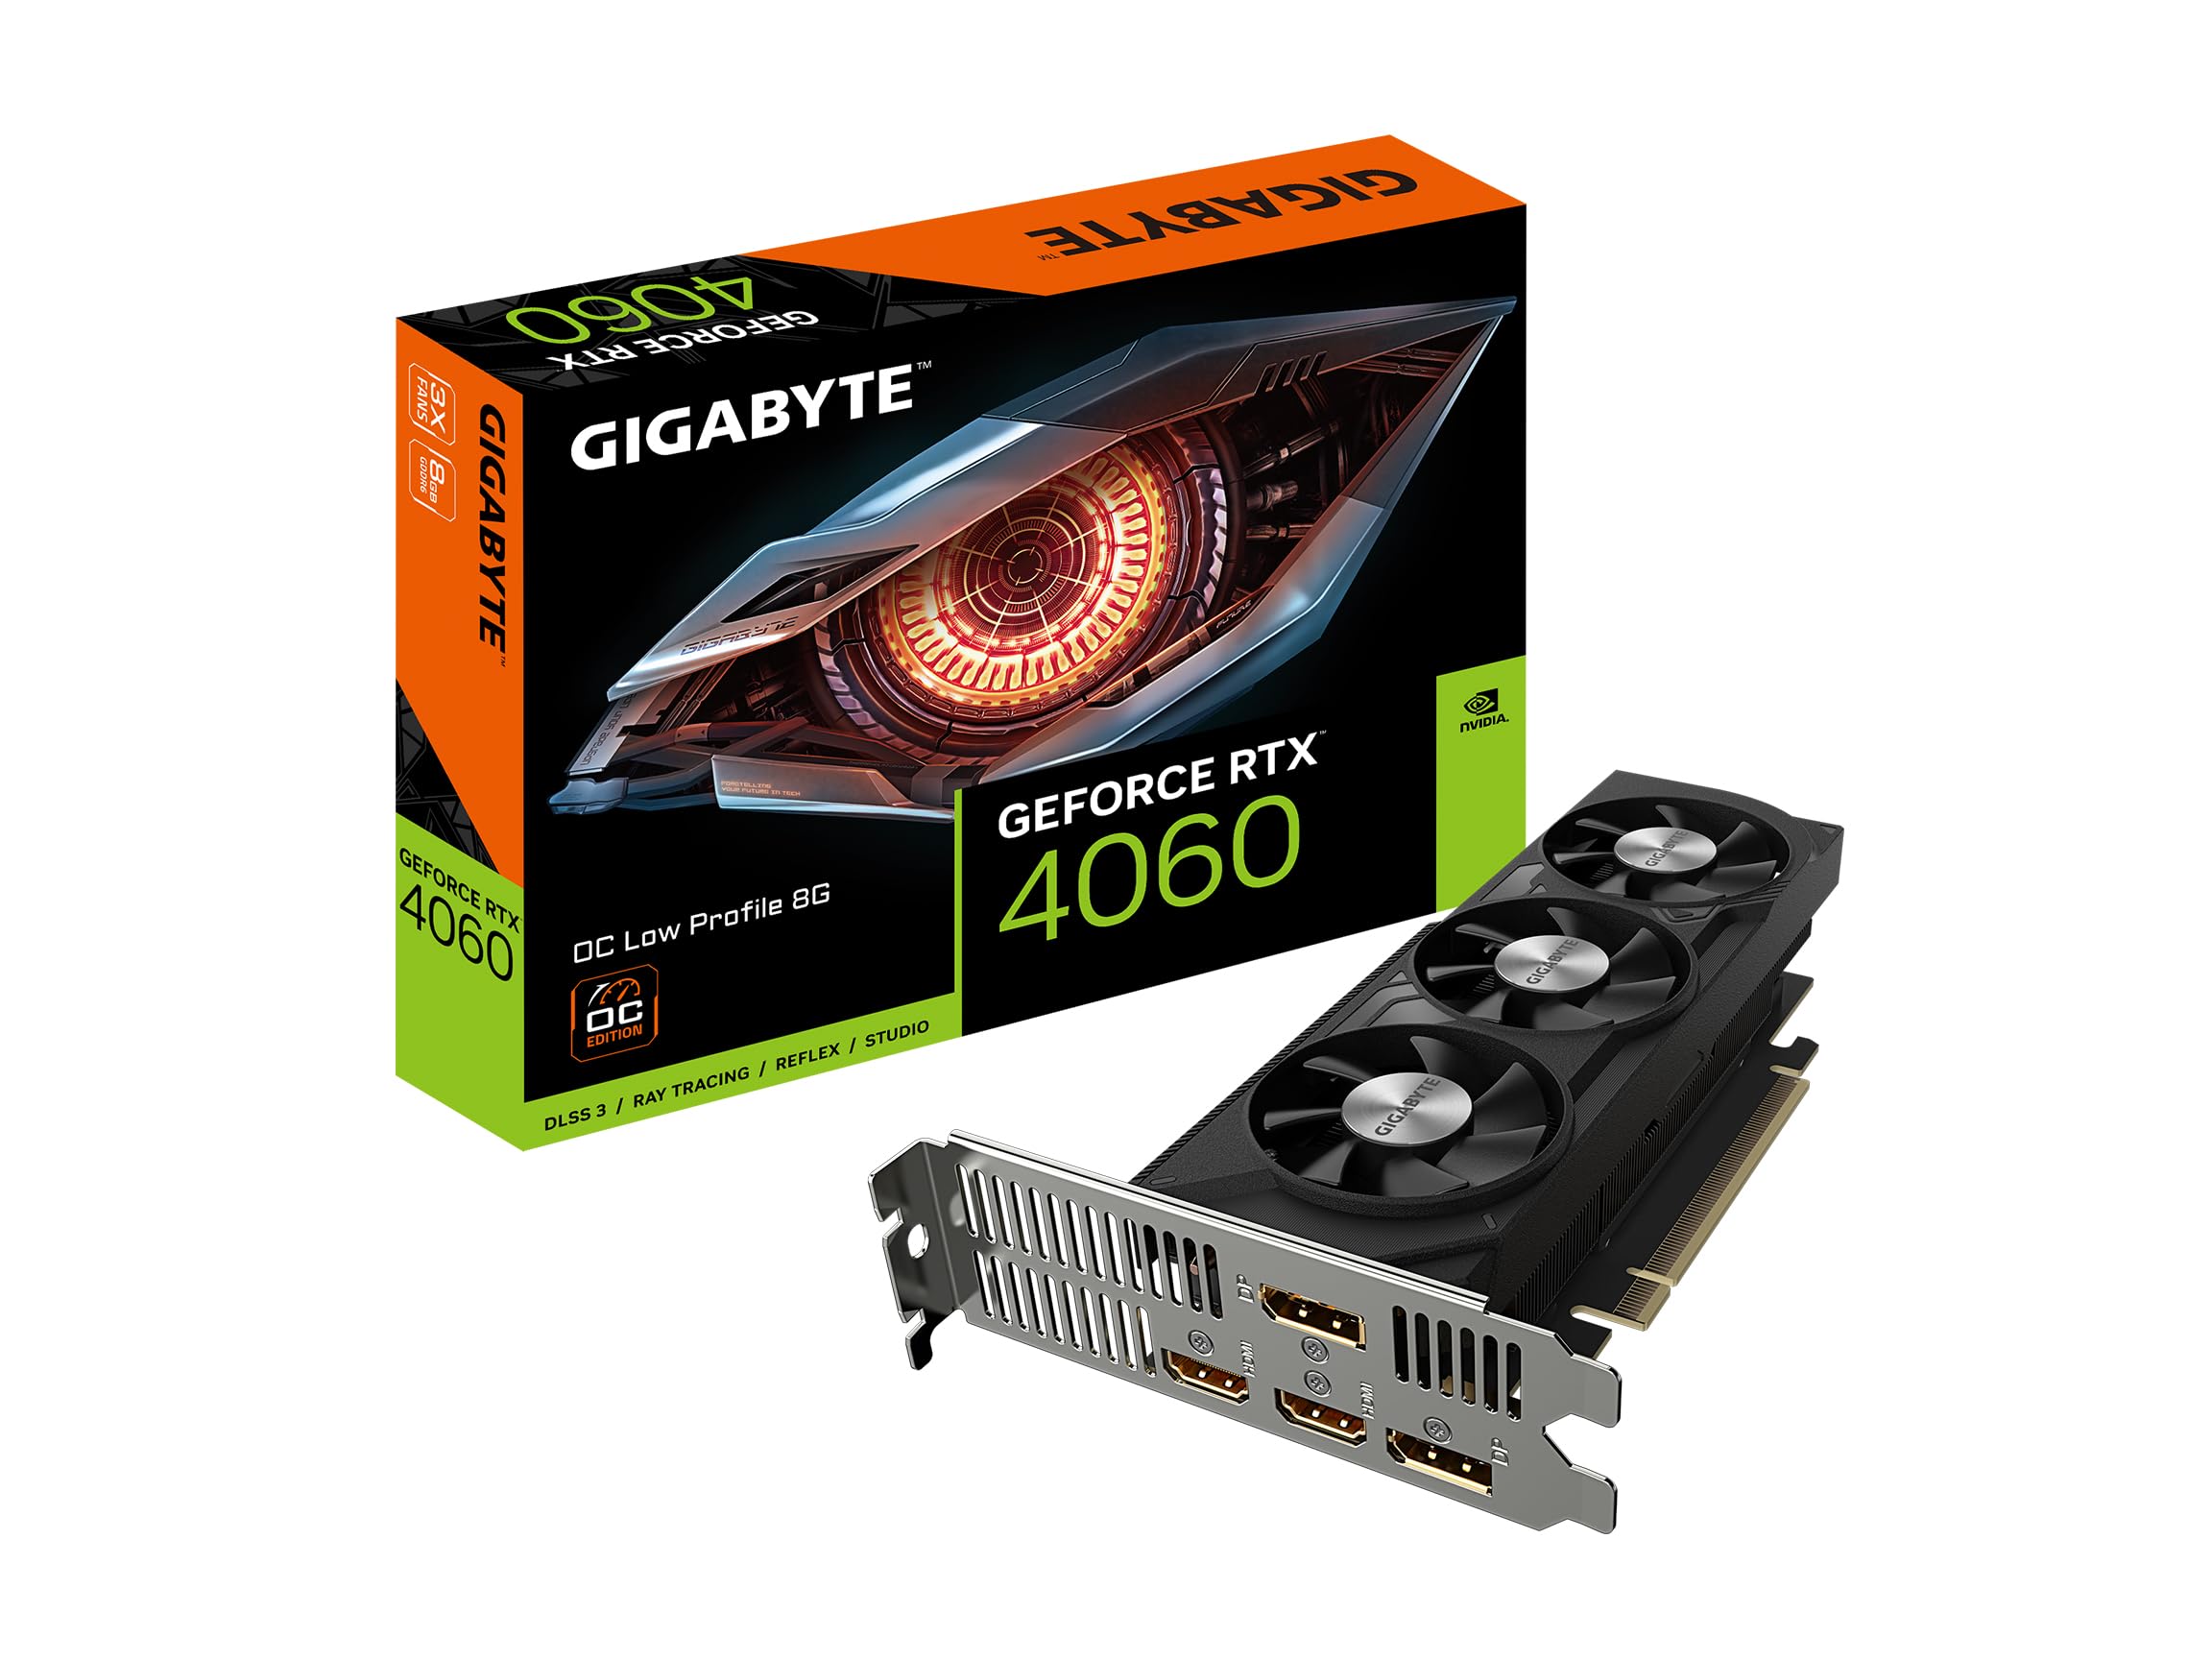 Gigabyte GeForce RTX 4060 OC ロープロファイル 8G グラフィックカード WINDFORCEファン 3倍 8GB 128ビット